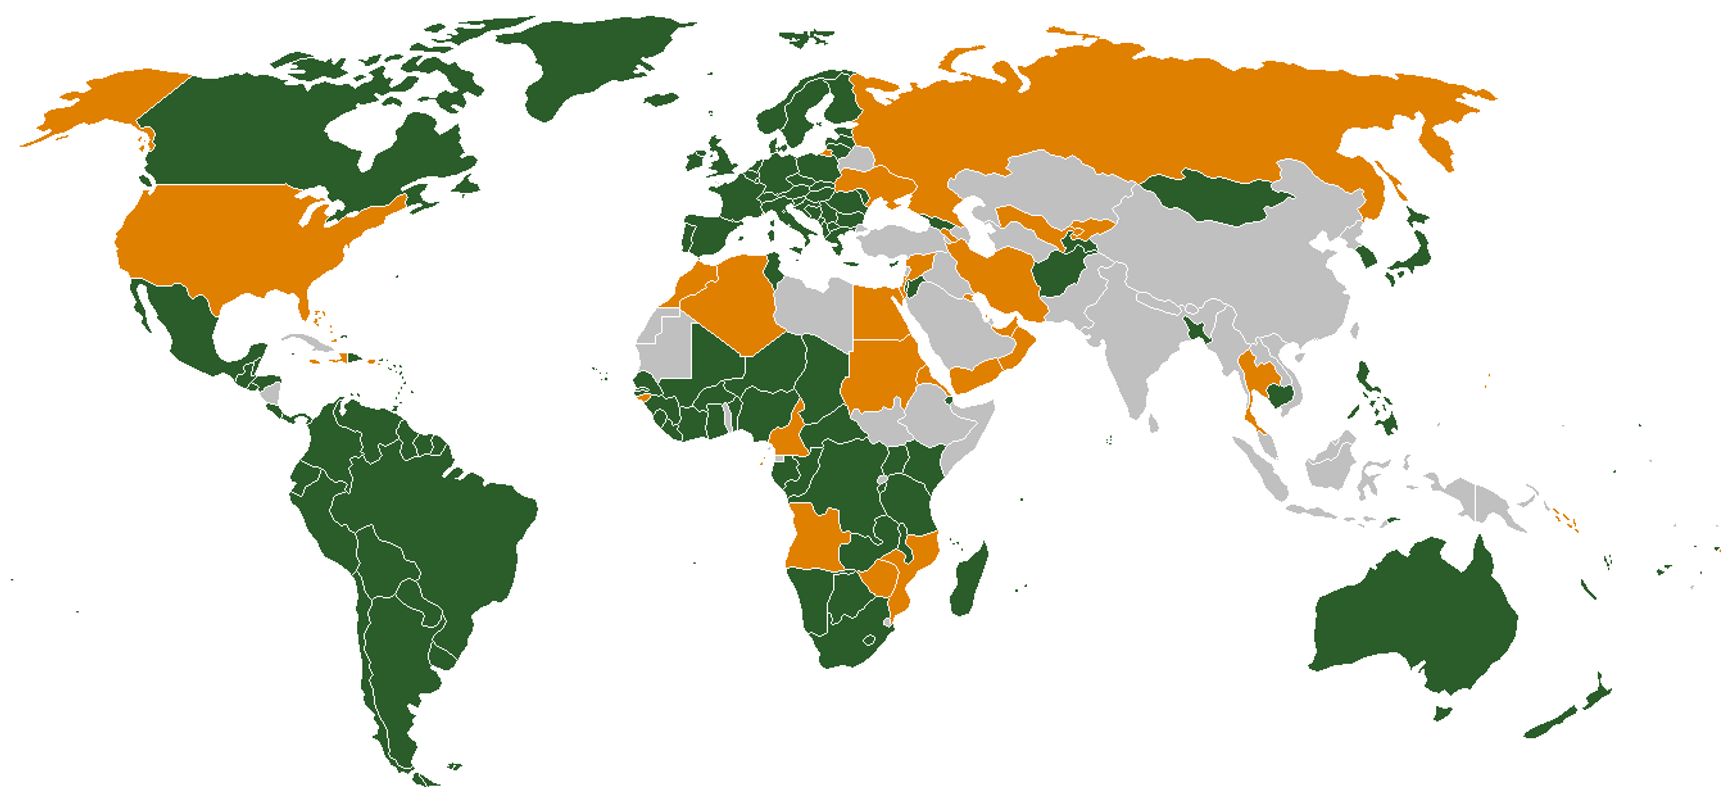 Зеленым выделены страны, ратифицировавшие Римский статут